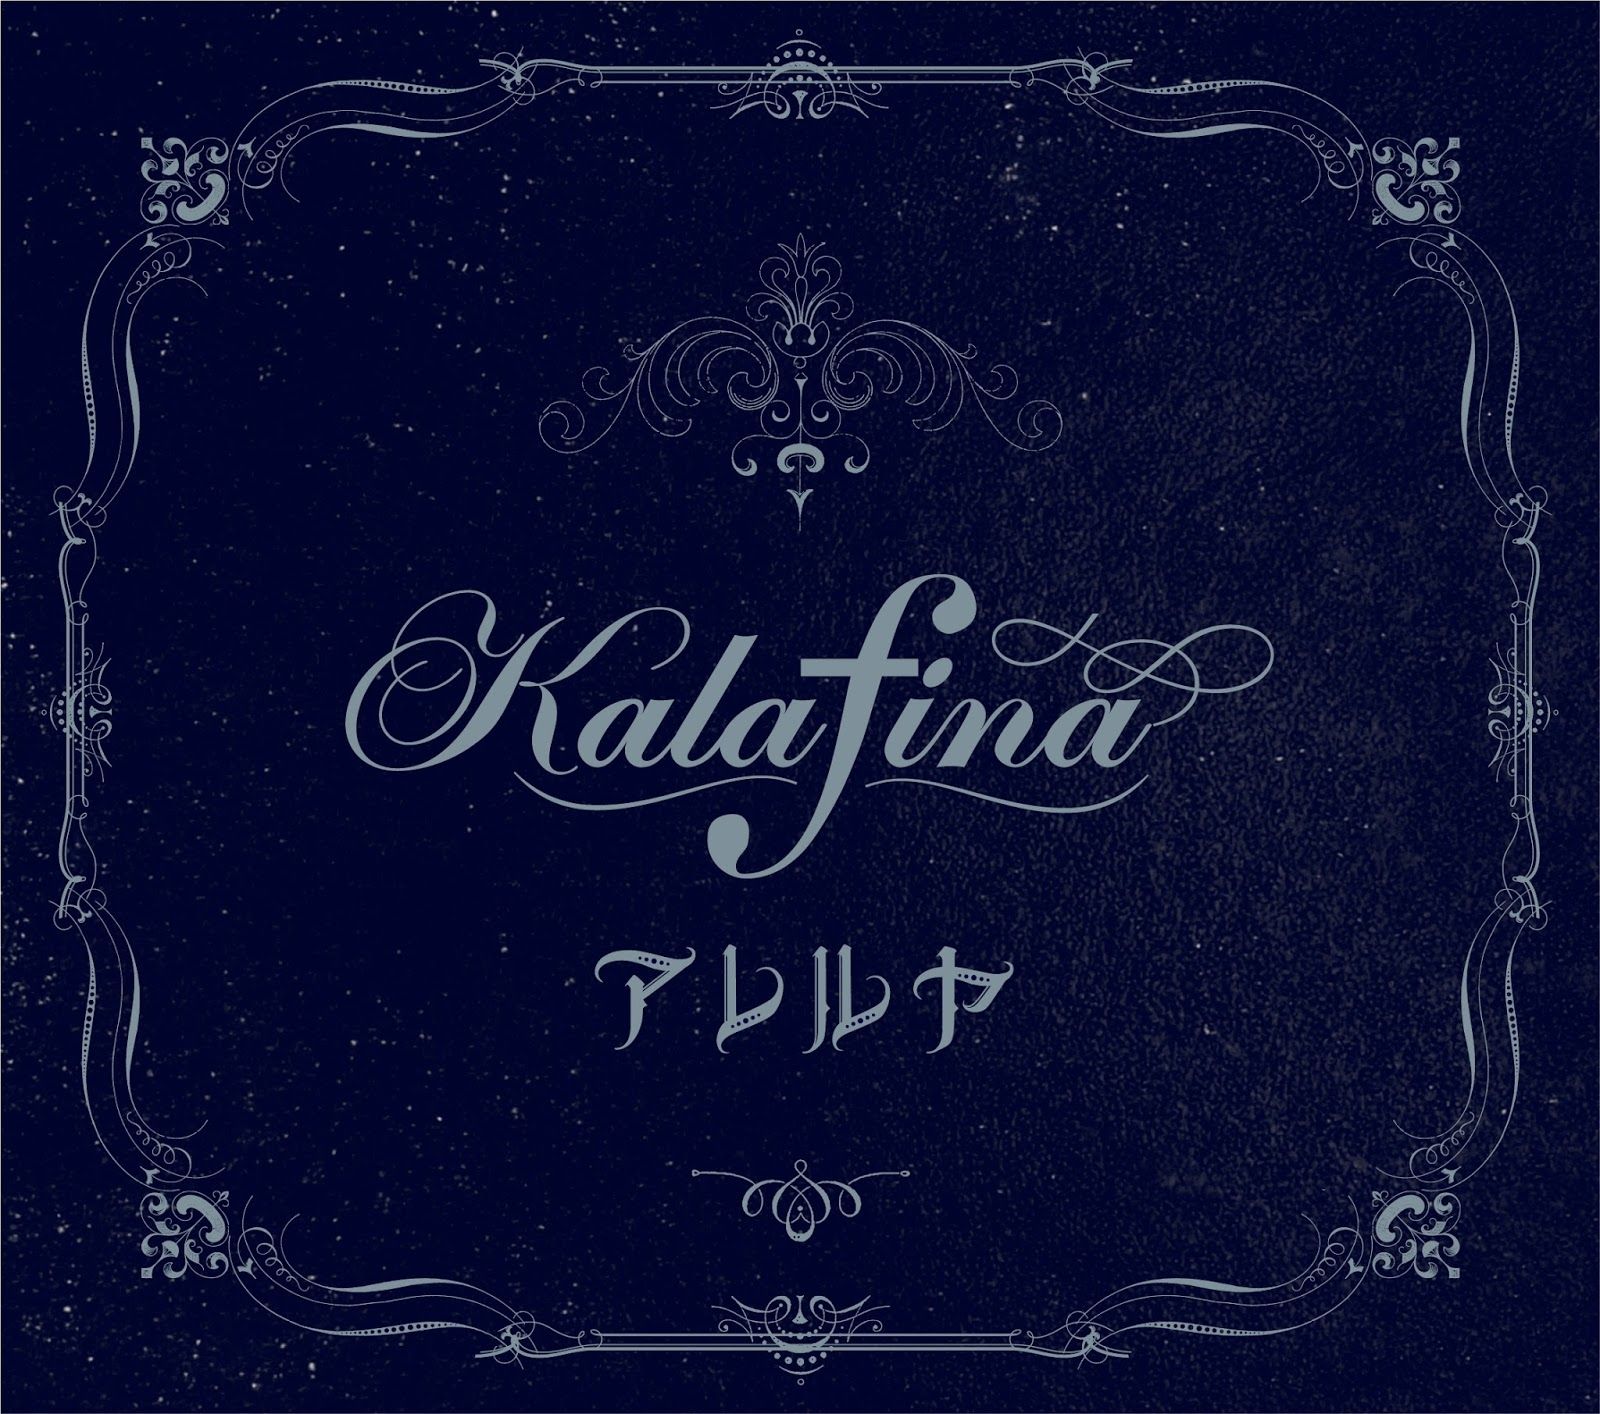 Imagem do álbum Alleluia do(a) artista Kalafina